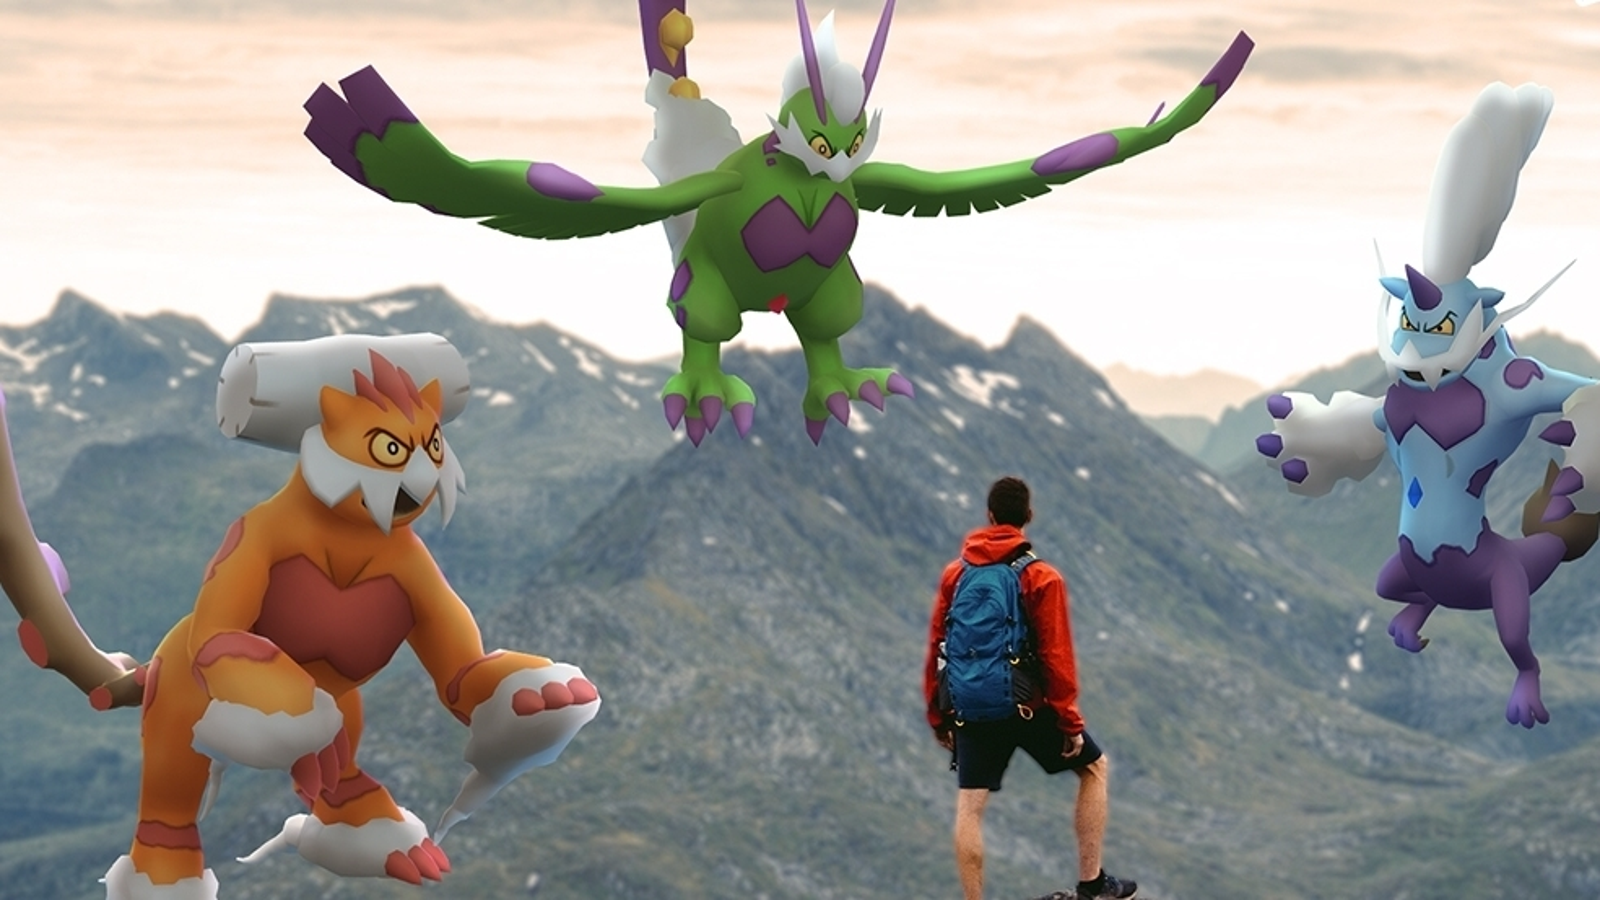 Pokémon GO - Guia Completo da Primeira Temporada da Liga de